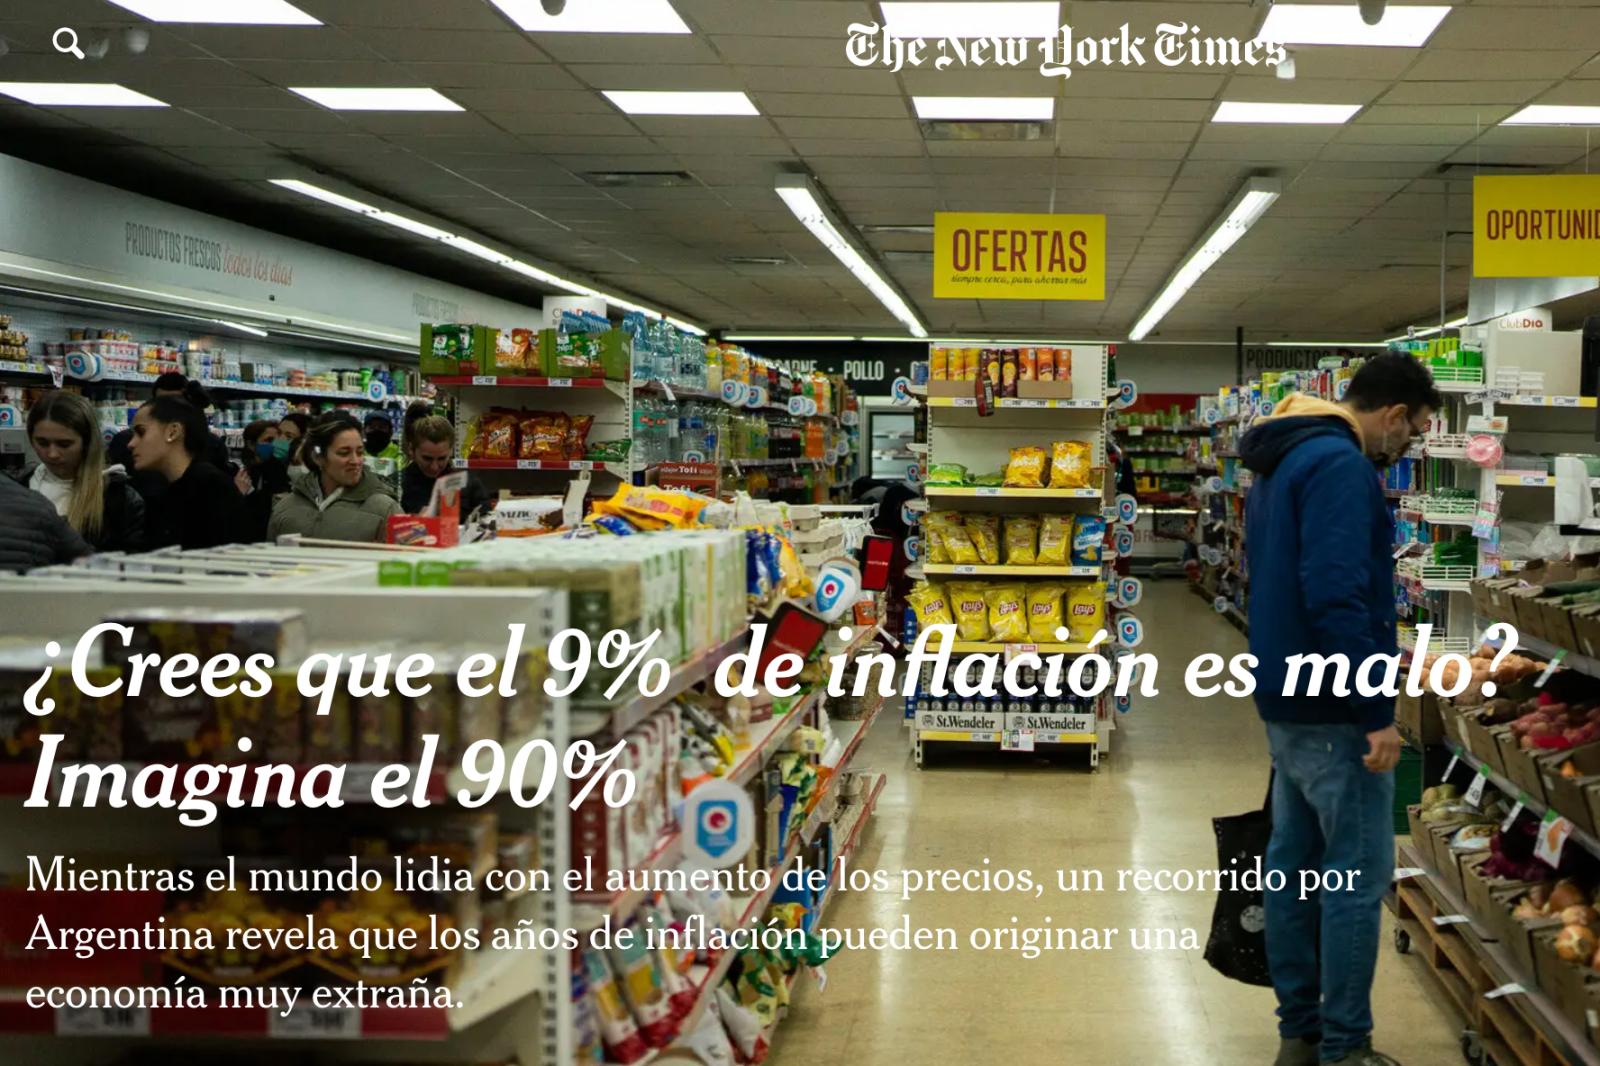 NYTimes: ¿Cómo lidia Argentina con la inflación?